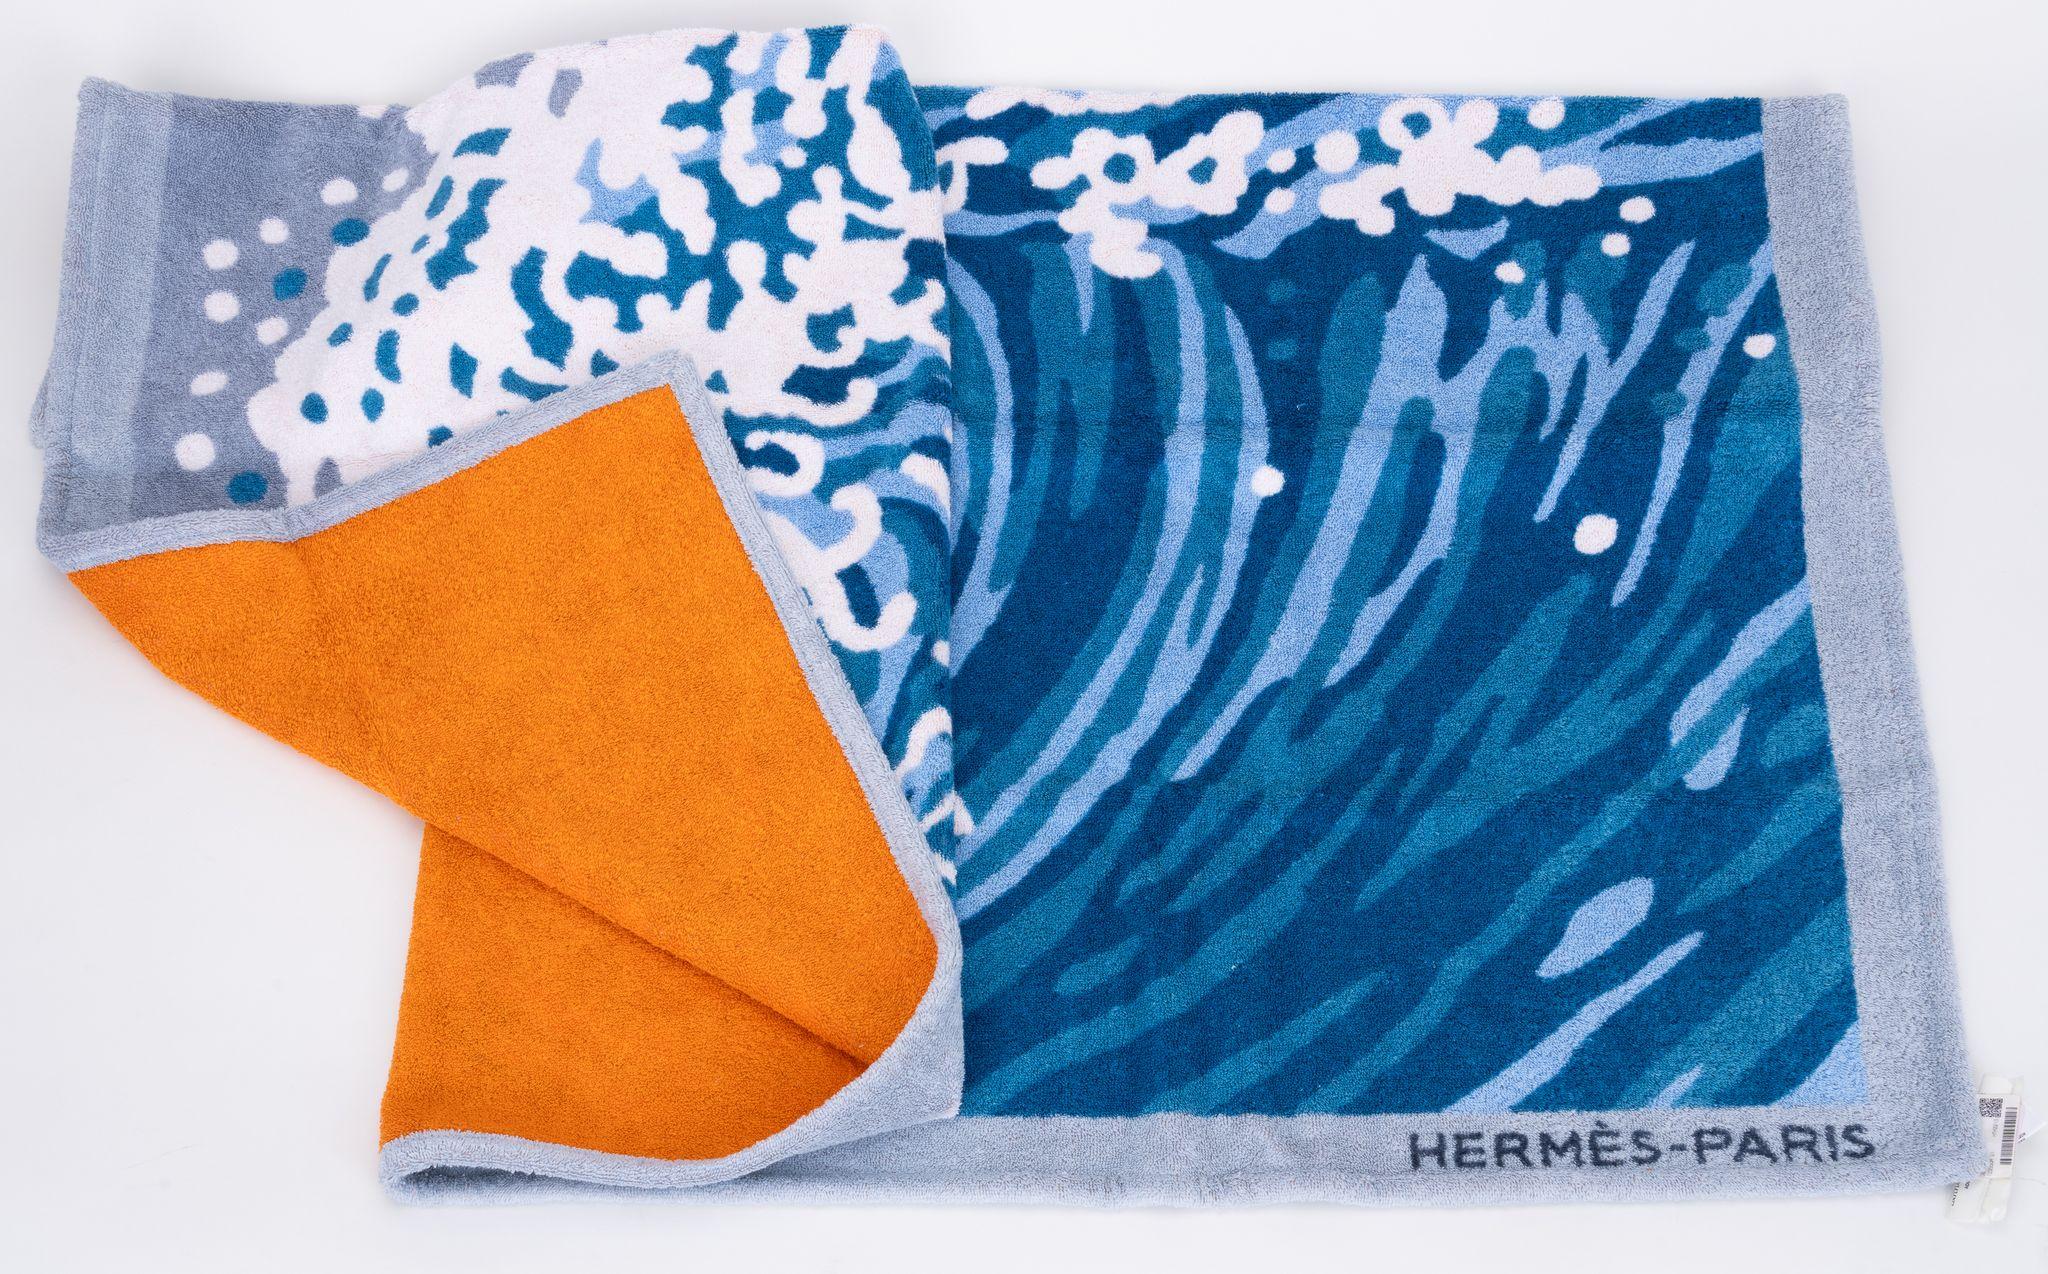 Hermès Strandhandtuch aus Baumwolle mit Wellen- und Surfermotiv. Neu mit Originalverpackung.